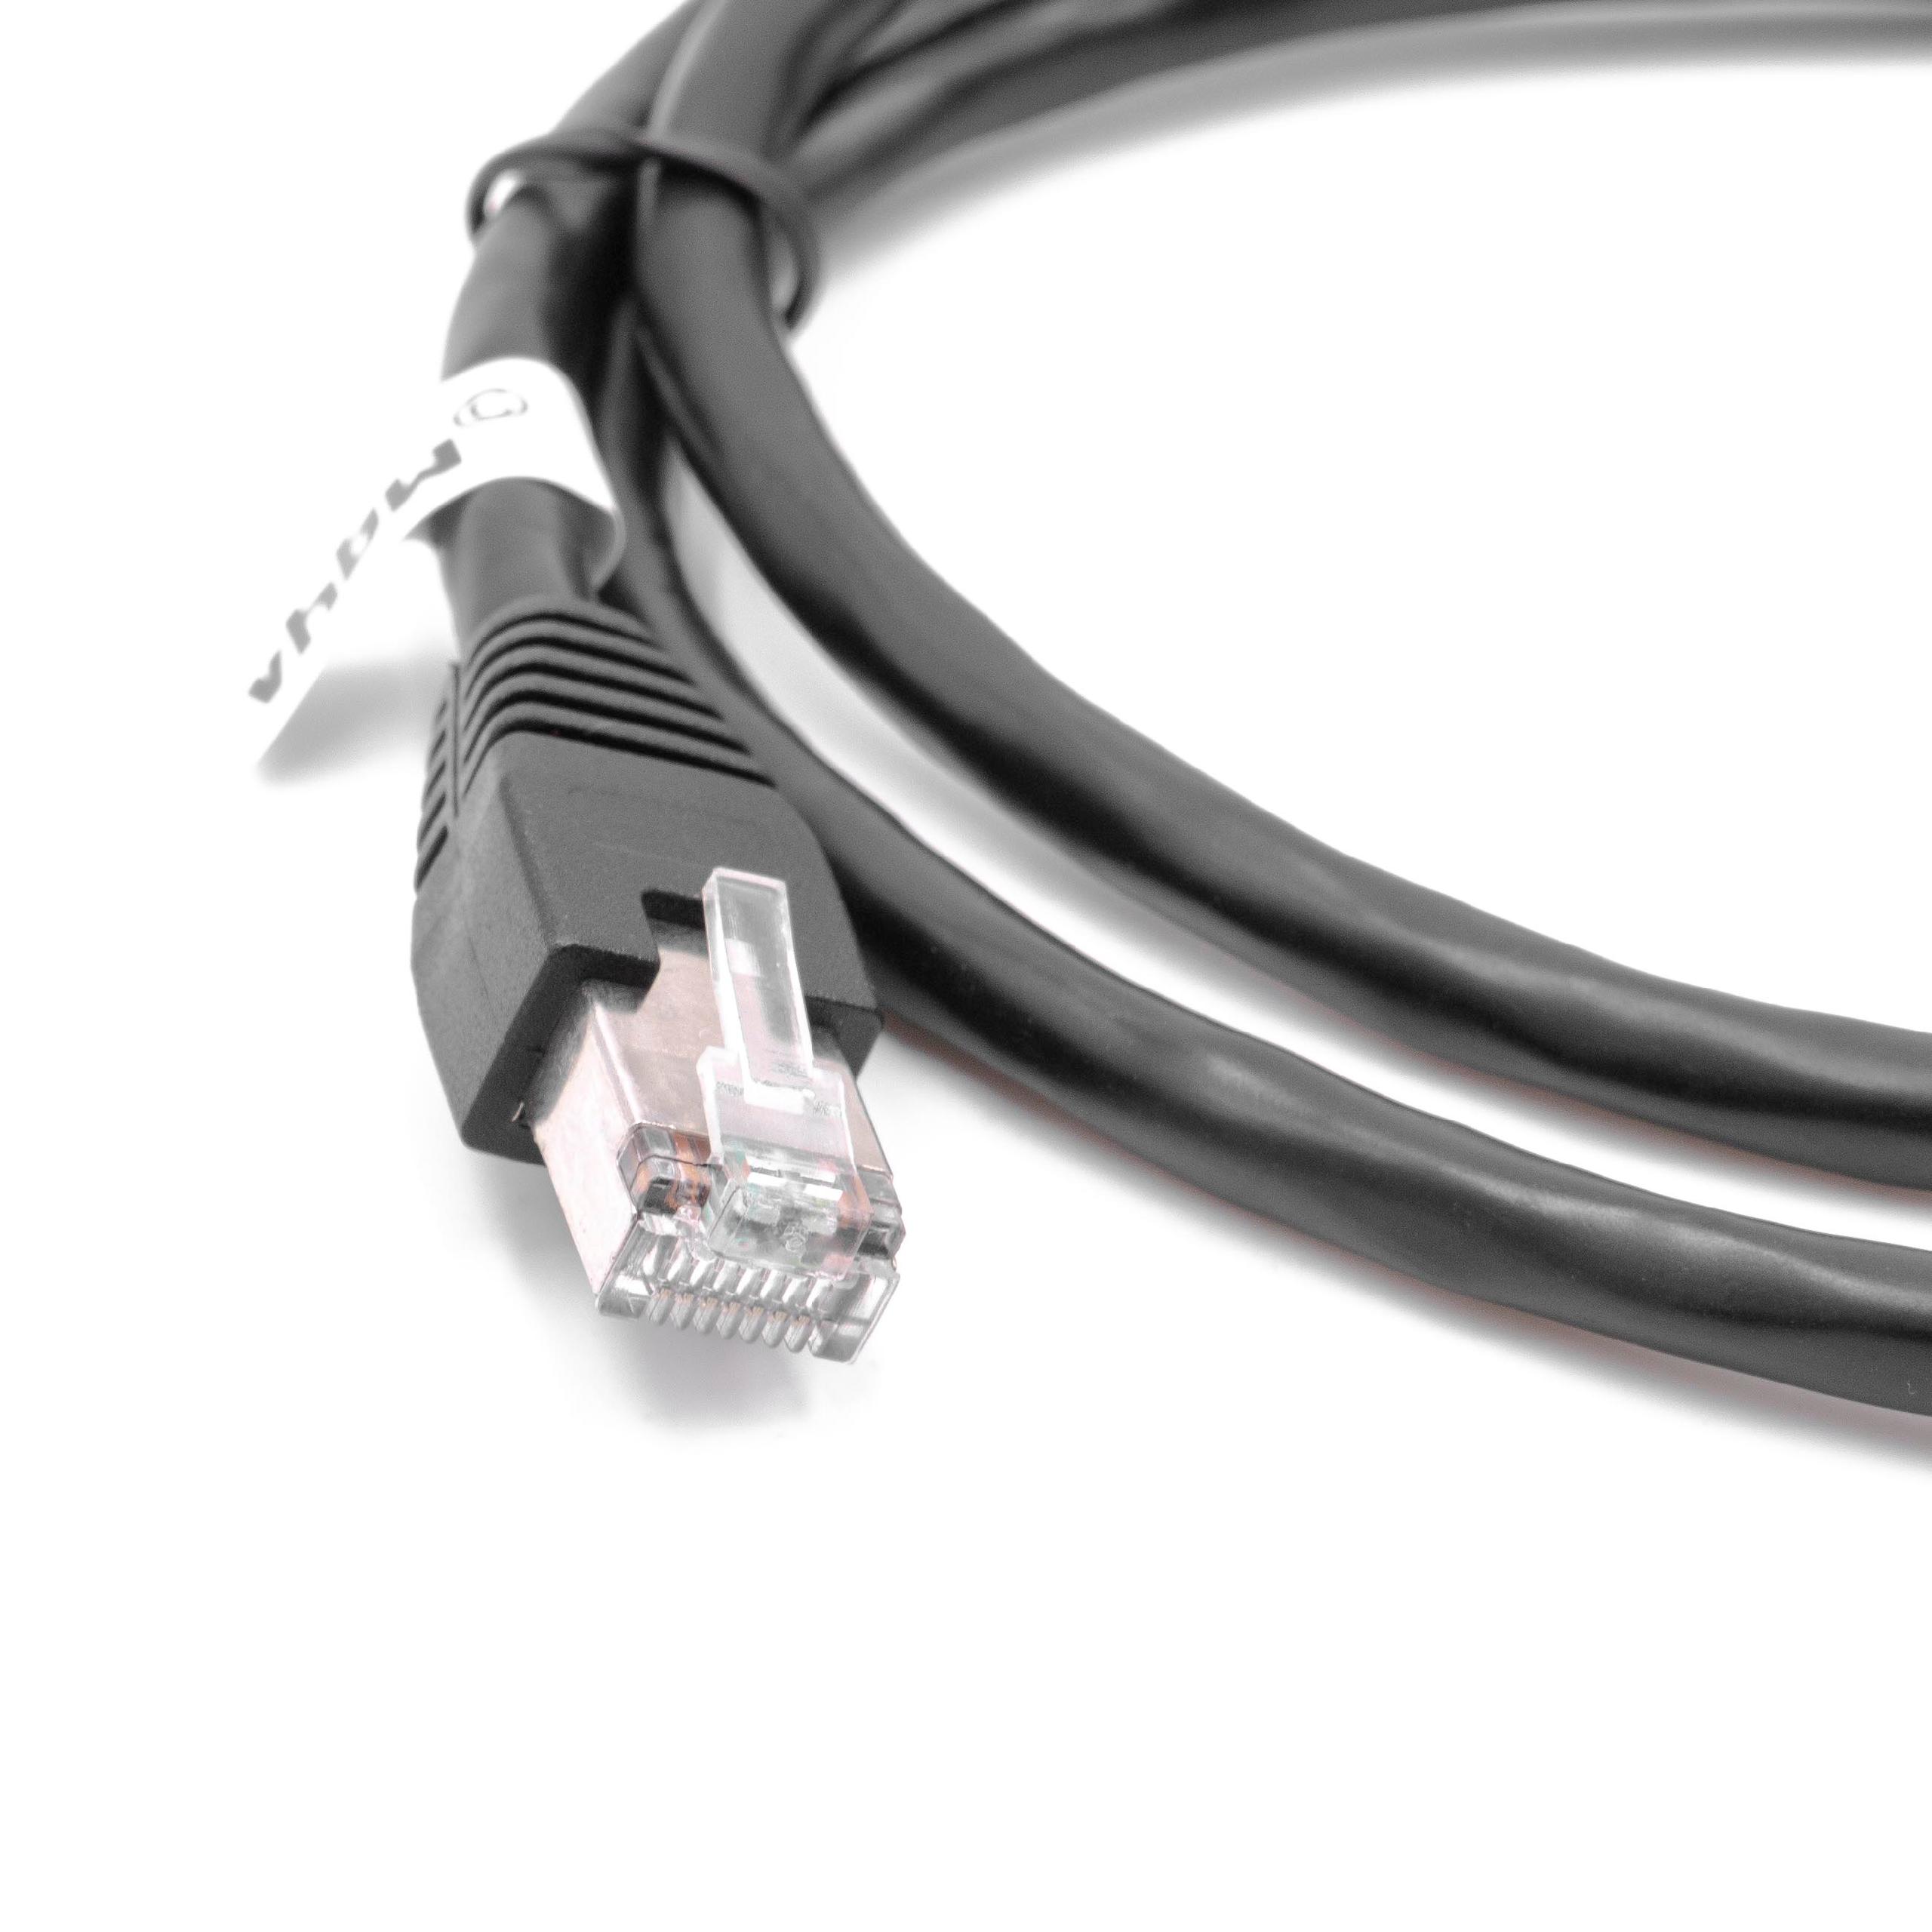 Cable de extensión Cat6, RJ45 (m) a RJ45 (h) - Cable Ethernet LAN con conector RJ45 incorporado, 1 m